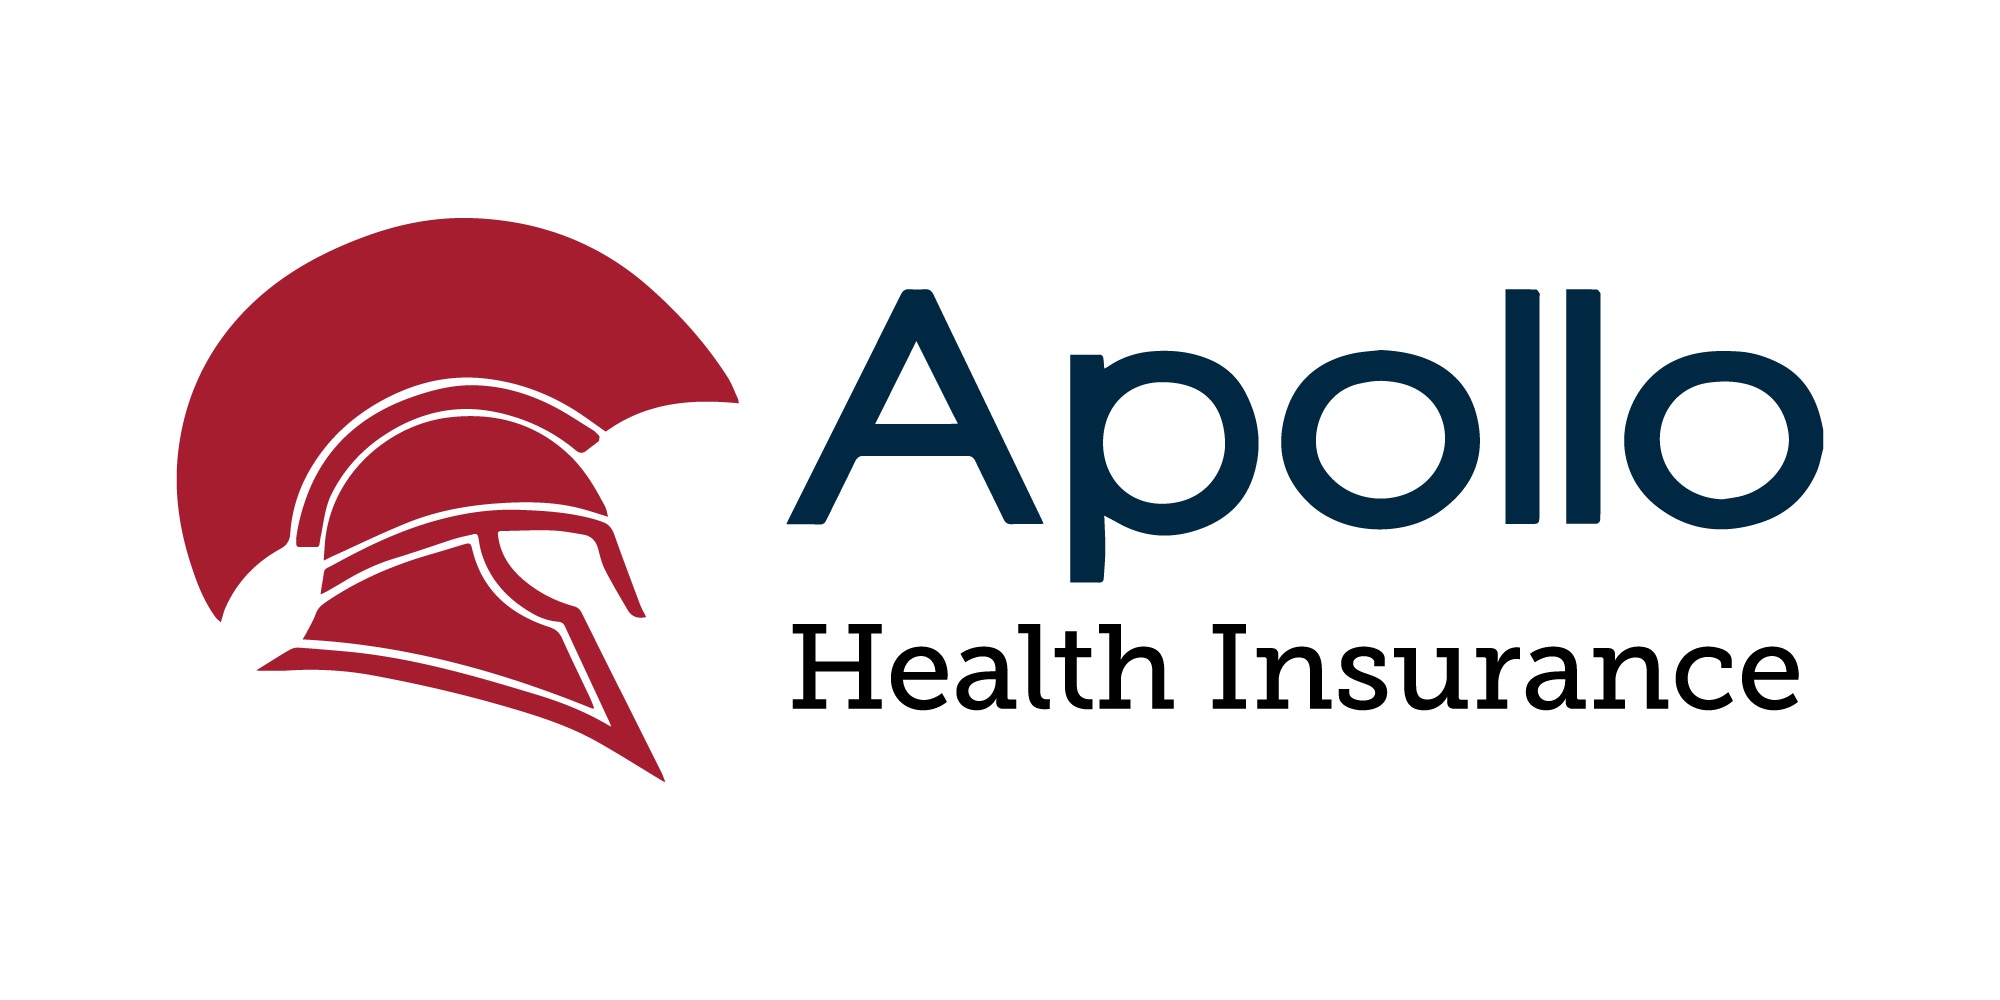 Apollo Insurance Group